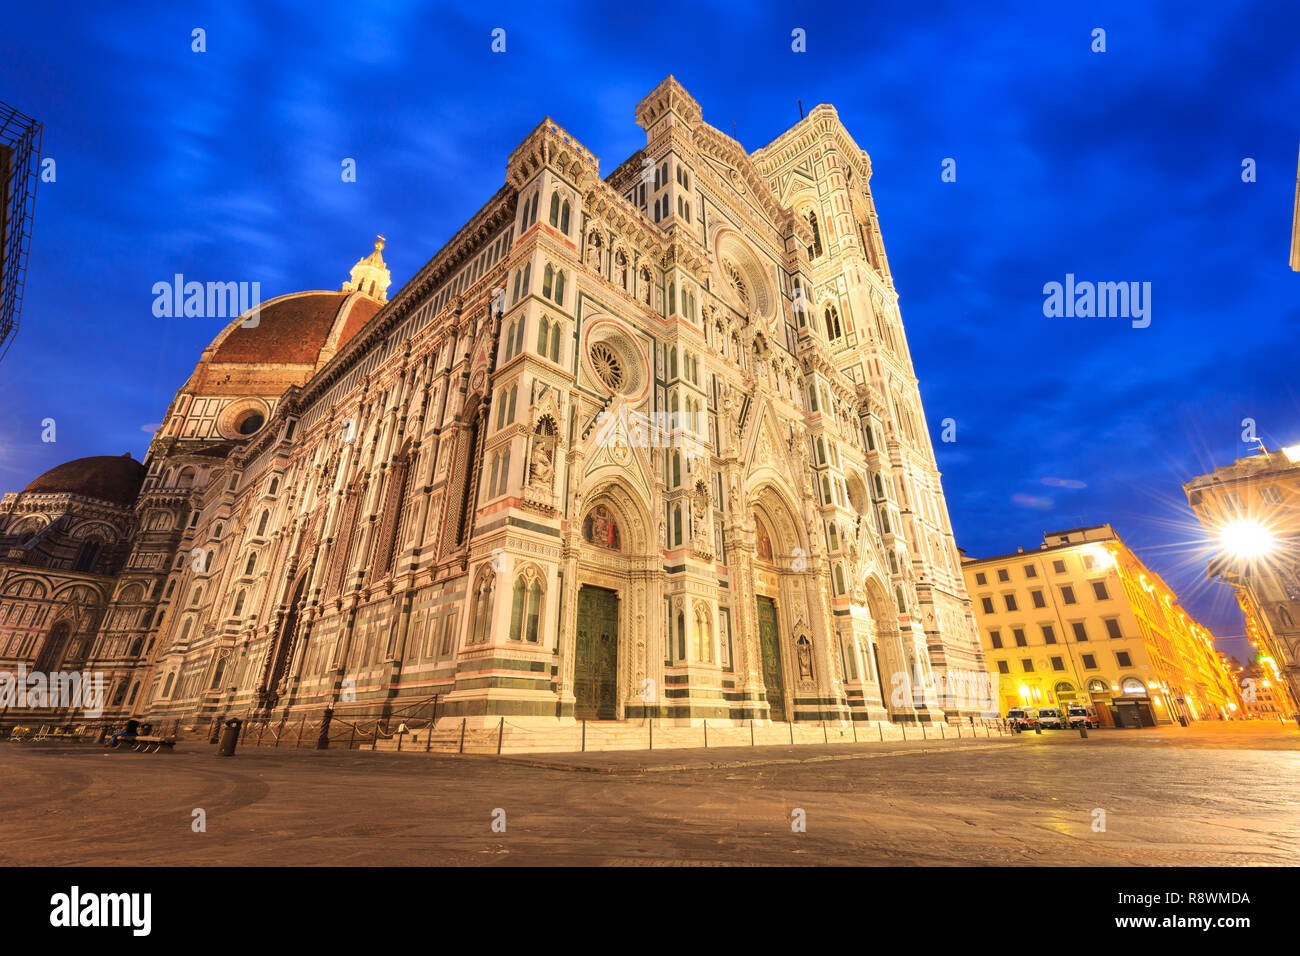 Cattedrale di Santa Maria del Fiore, Florence, Italy Stock Photo